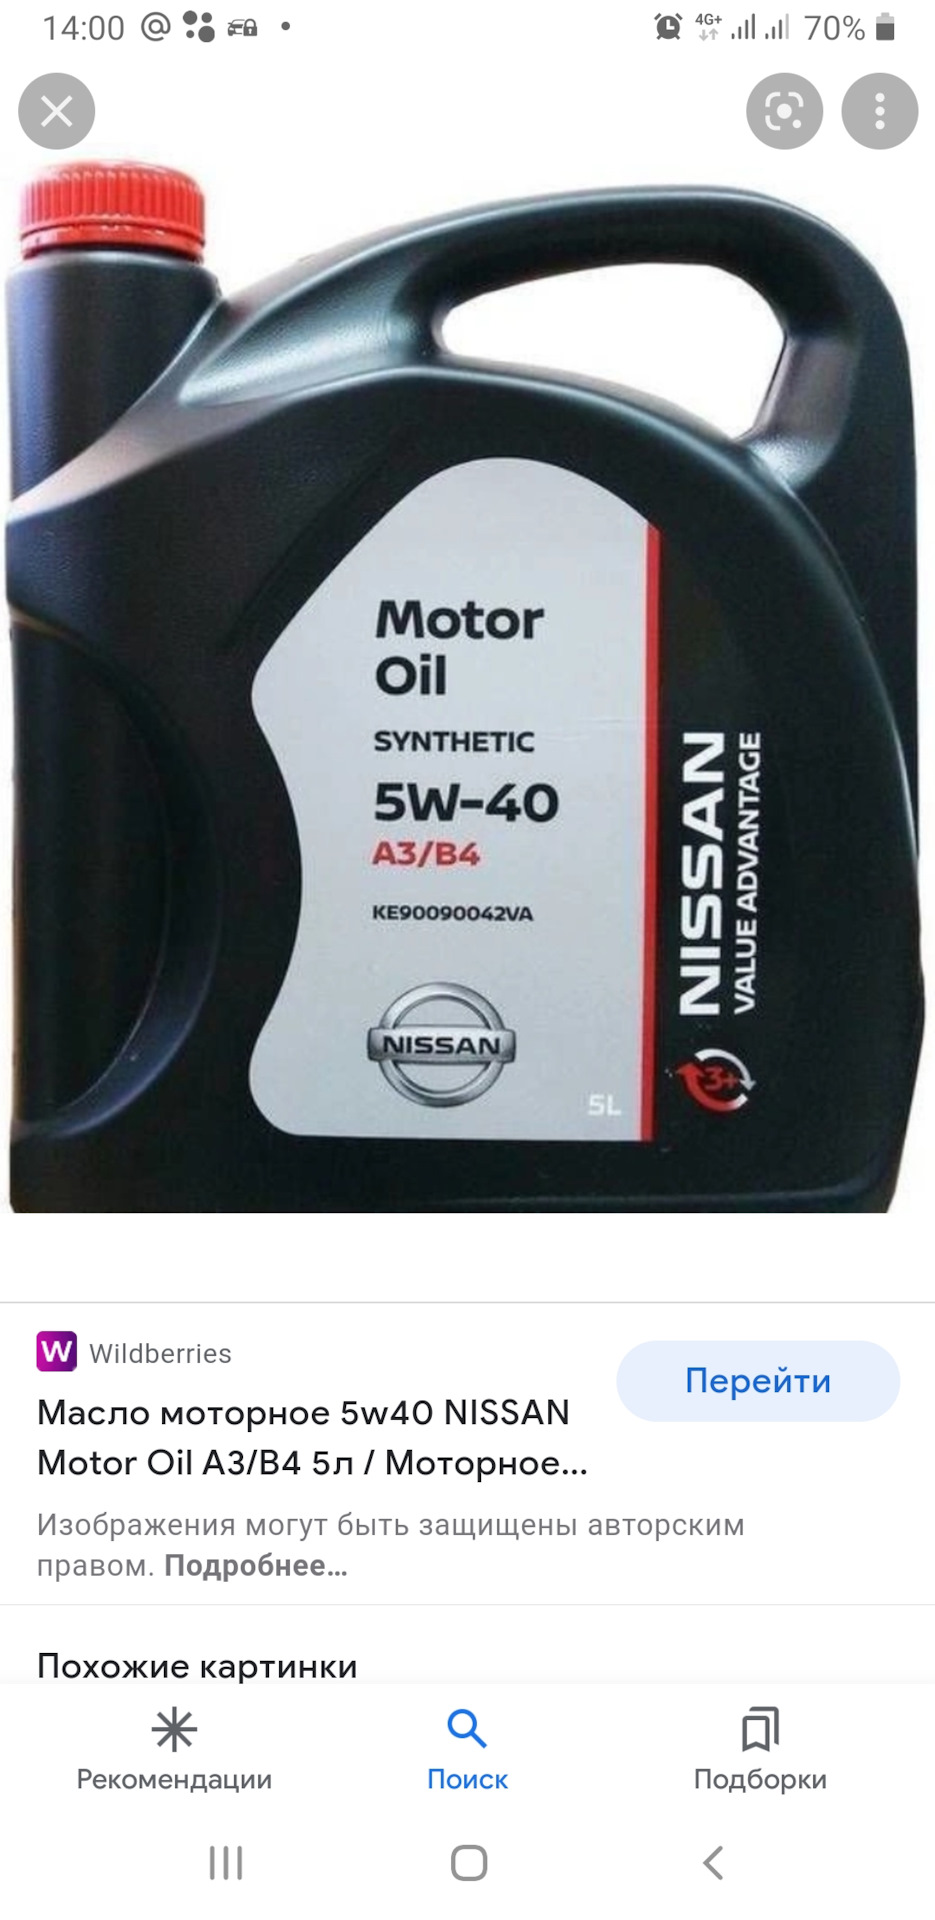 Масло оригинал ниссан 5w40. Nissan Motor Oil 5w40. Nissan Motor Oil 5w-40, 5л. Nissan 5-40. Ниссан 5w40 синтетика.